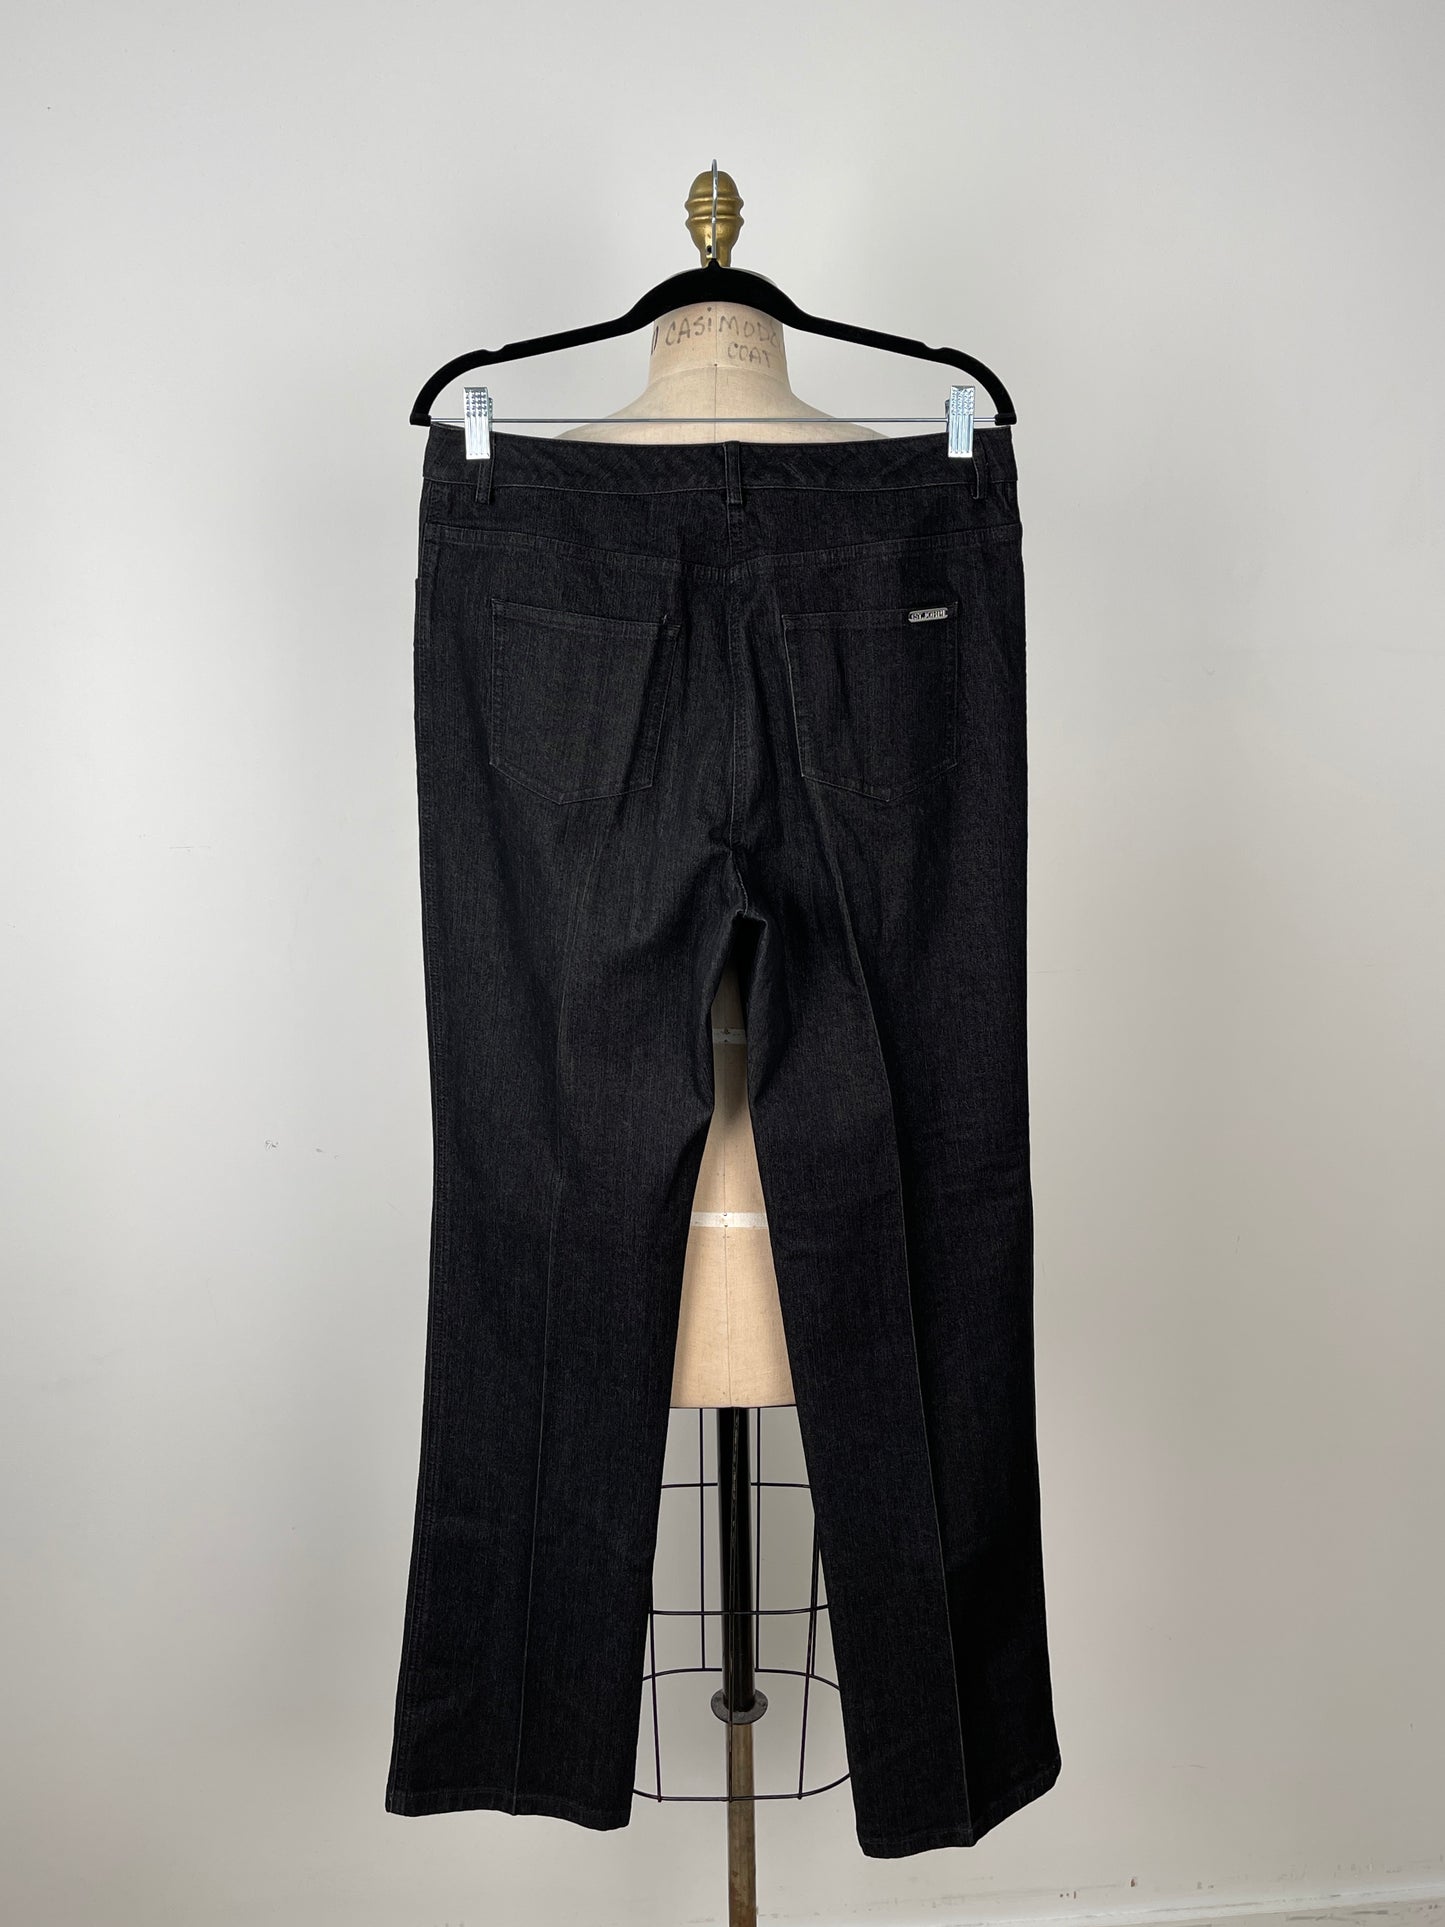 Pantalon en denim noir luxueux (10)